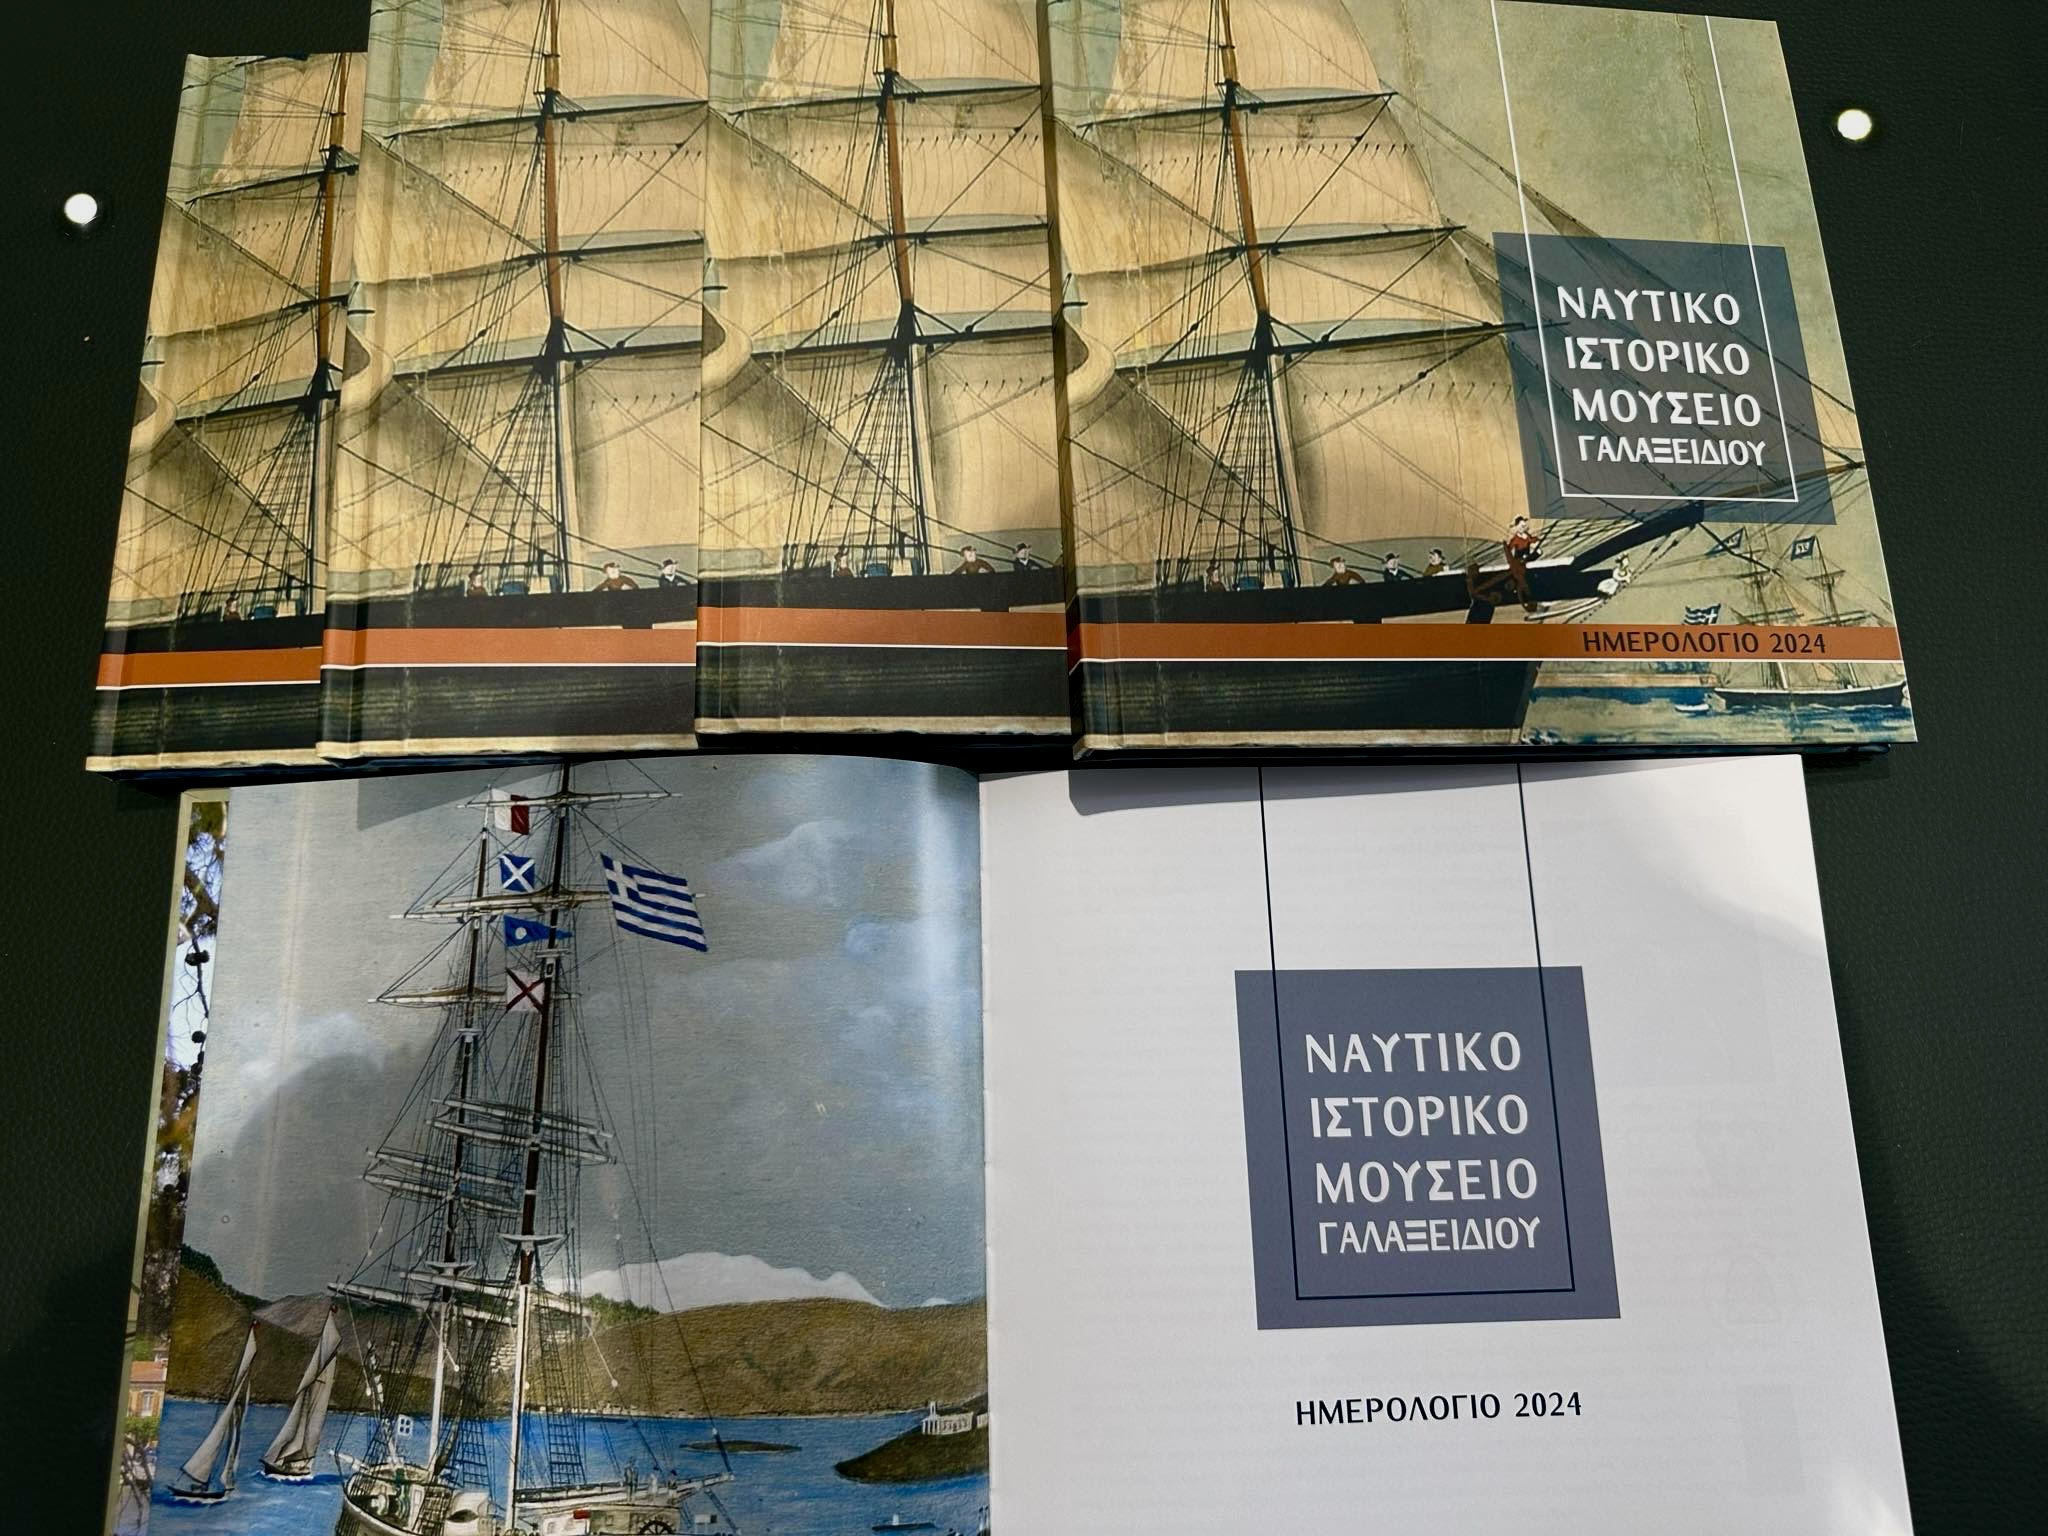 Κυκλοφόρησε το ημερολόγιο του Δήμου Δελφών για το 2024 αφιερωμένο στο «Ναυτικό και Ιστορικό Μουσείο Γαλαξειδίου»